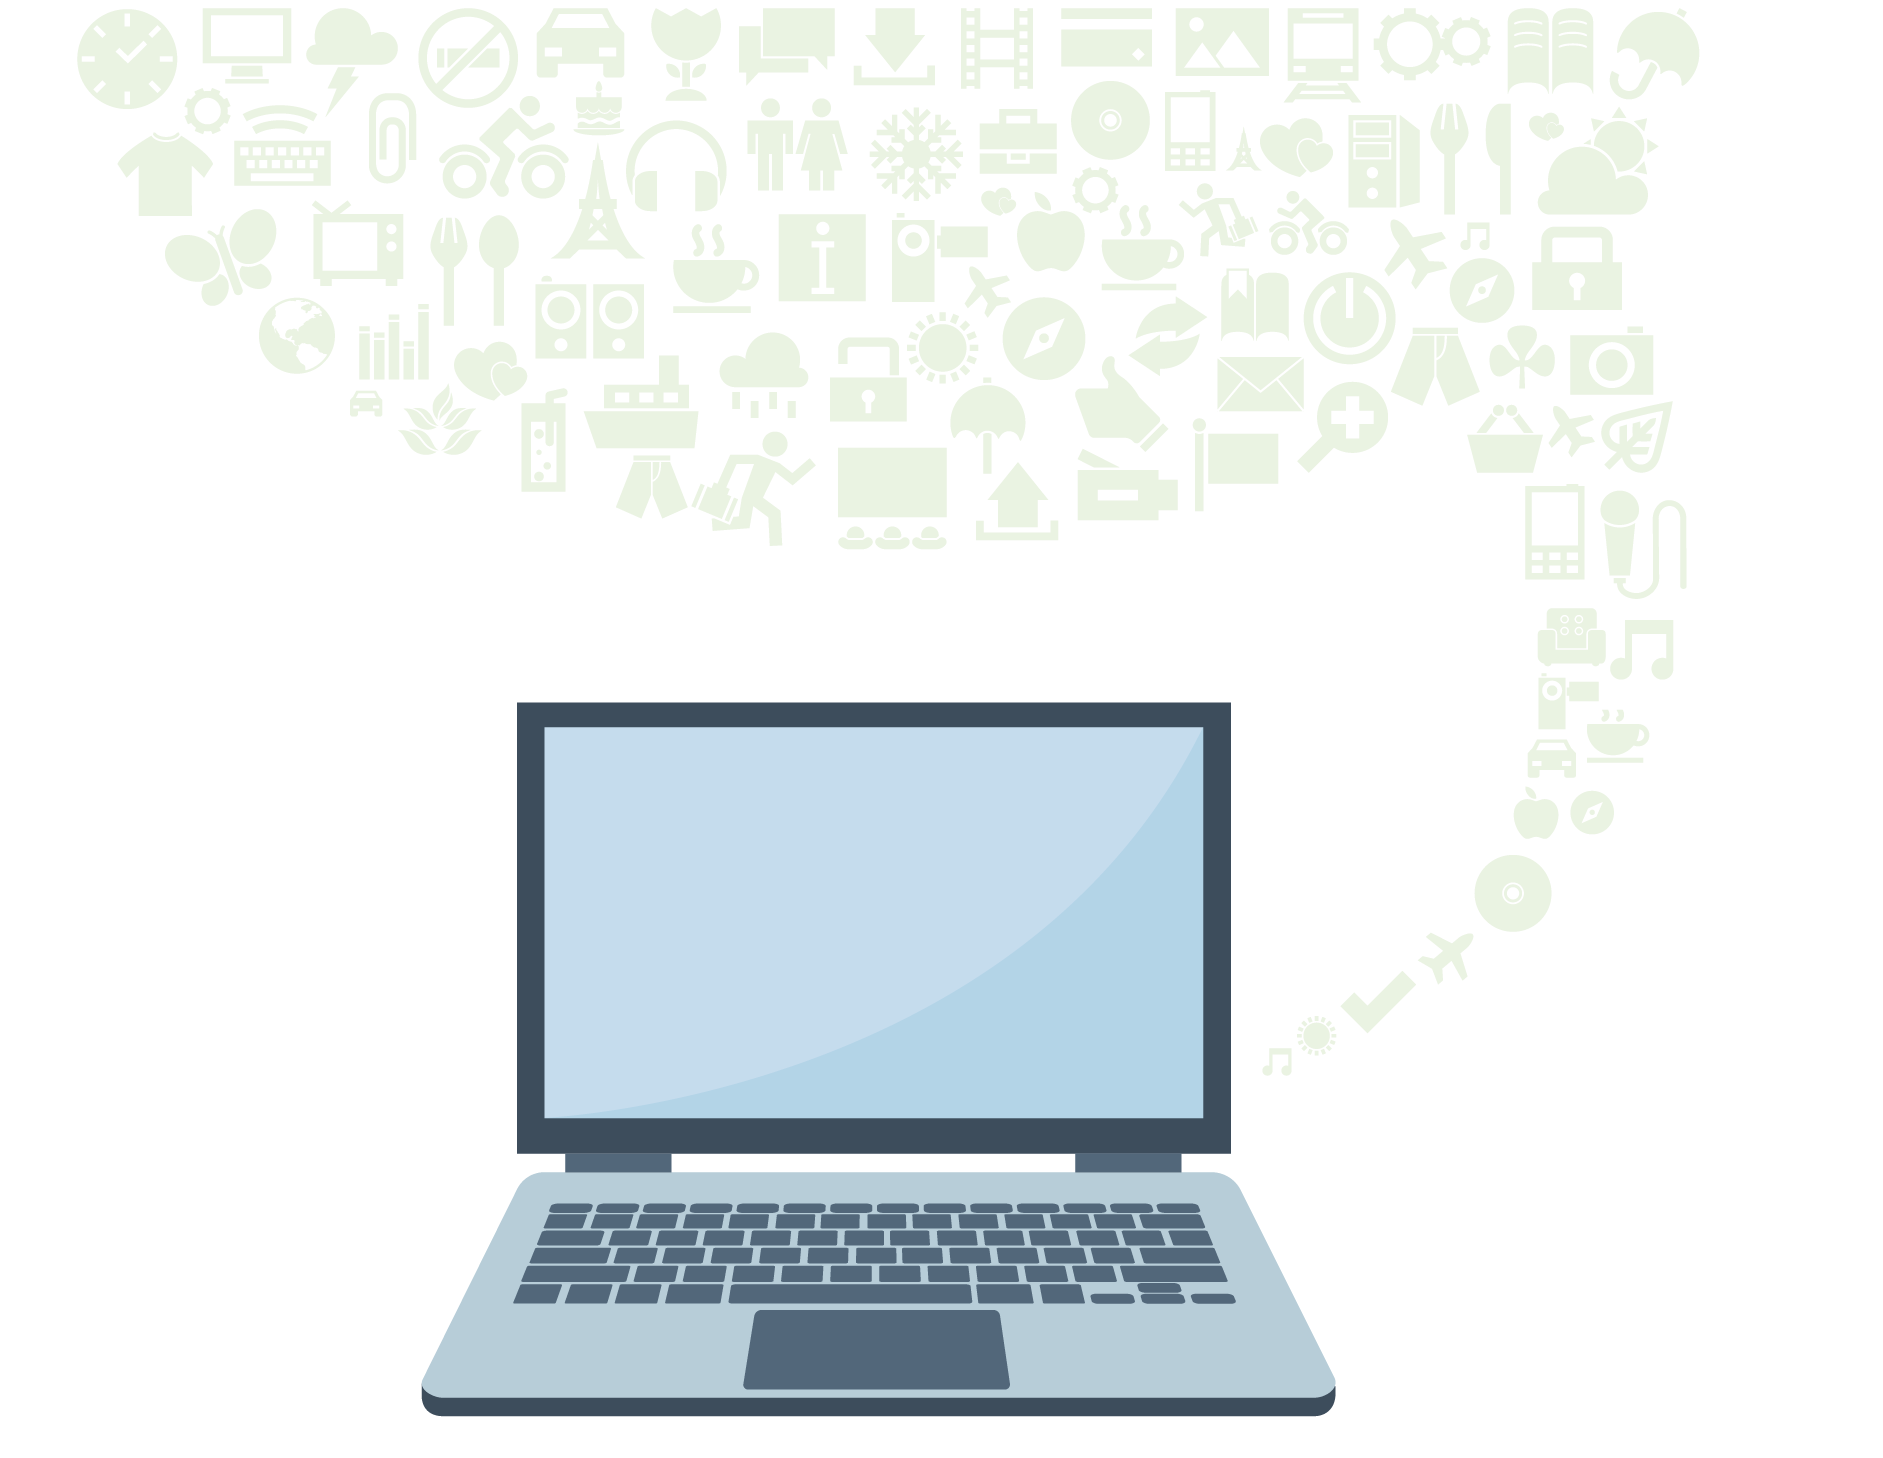 Celular, computadora y tableta conectados a una nube llena de herramientas y recursos tecnológicos